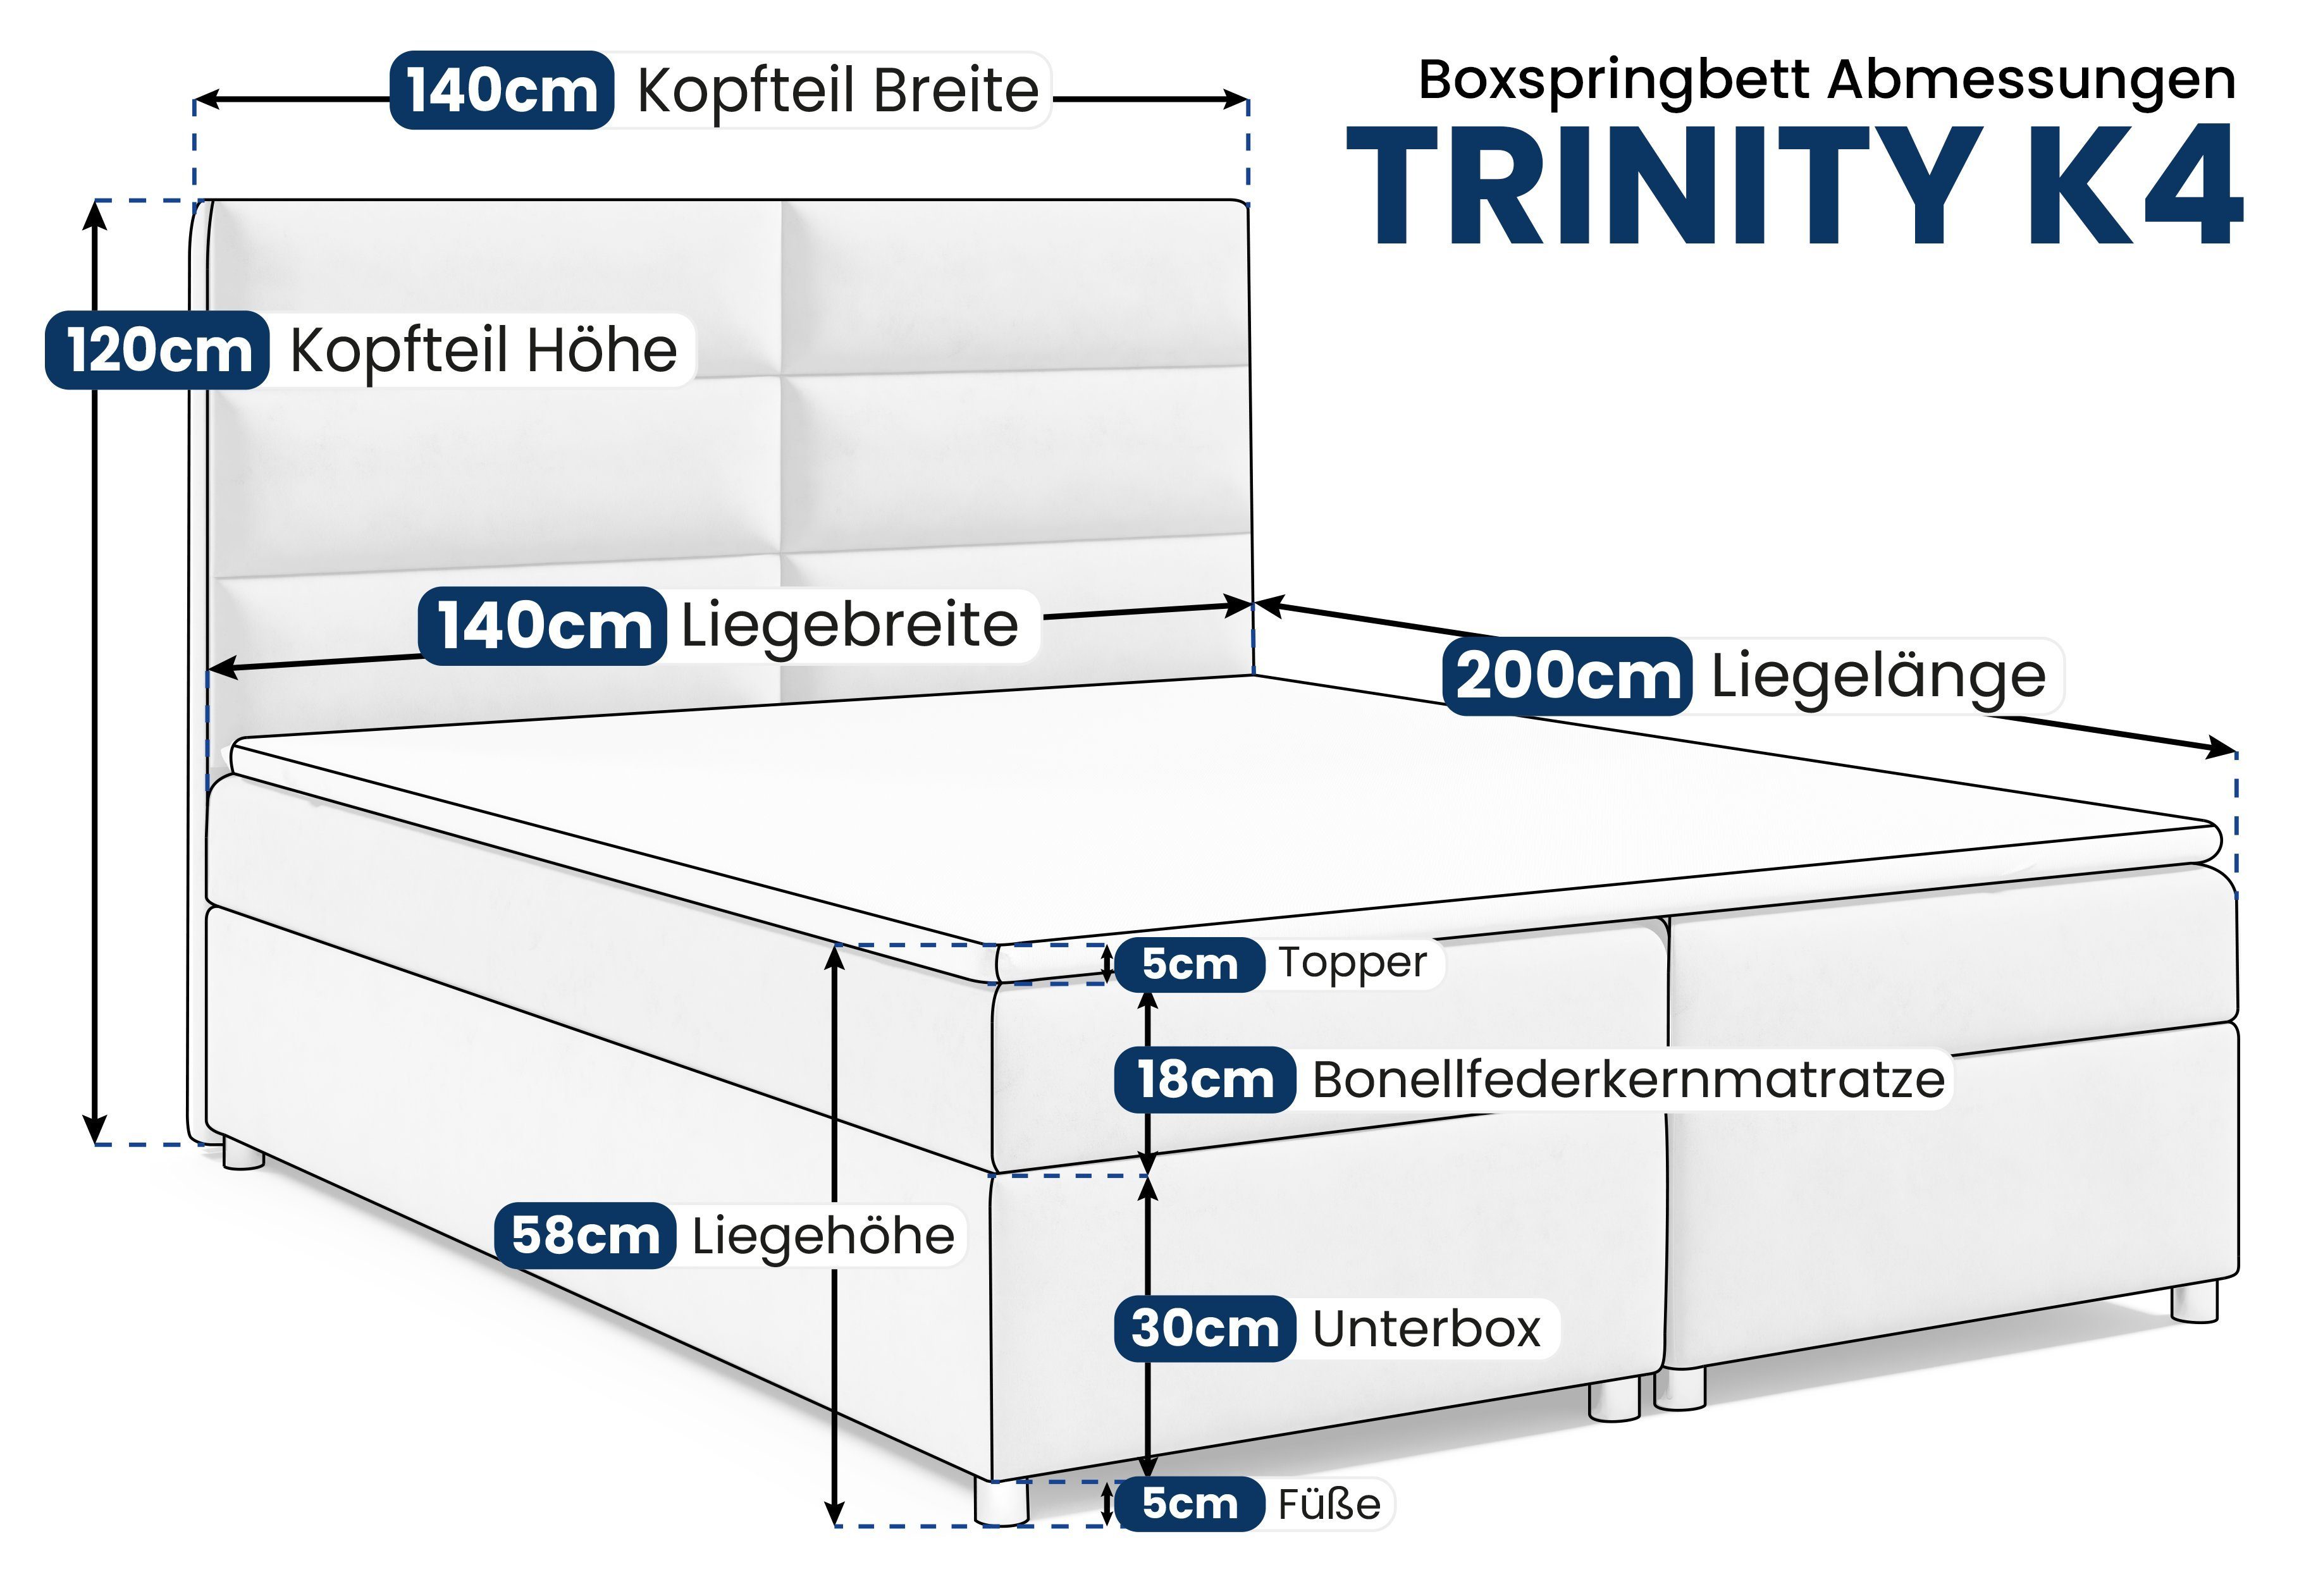 Best for Home Boxspringbett Trinity K4, Graphit Bettkasten mit und Topper